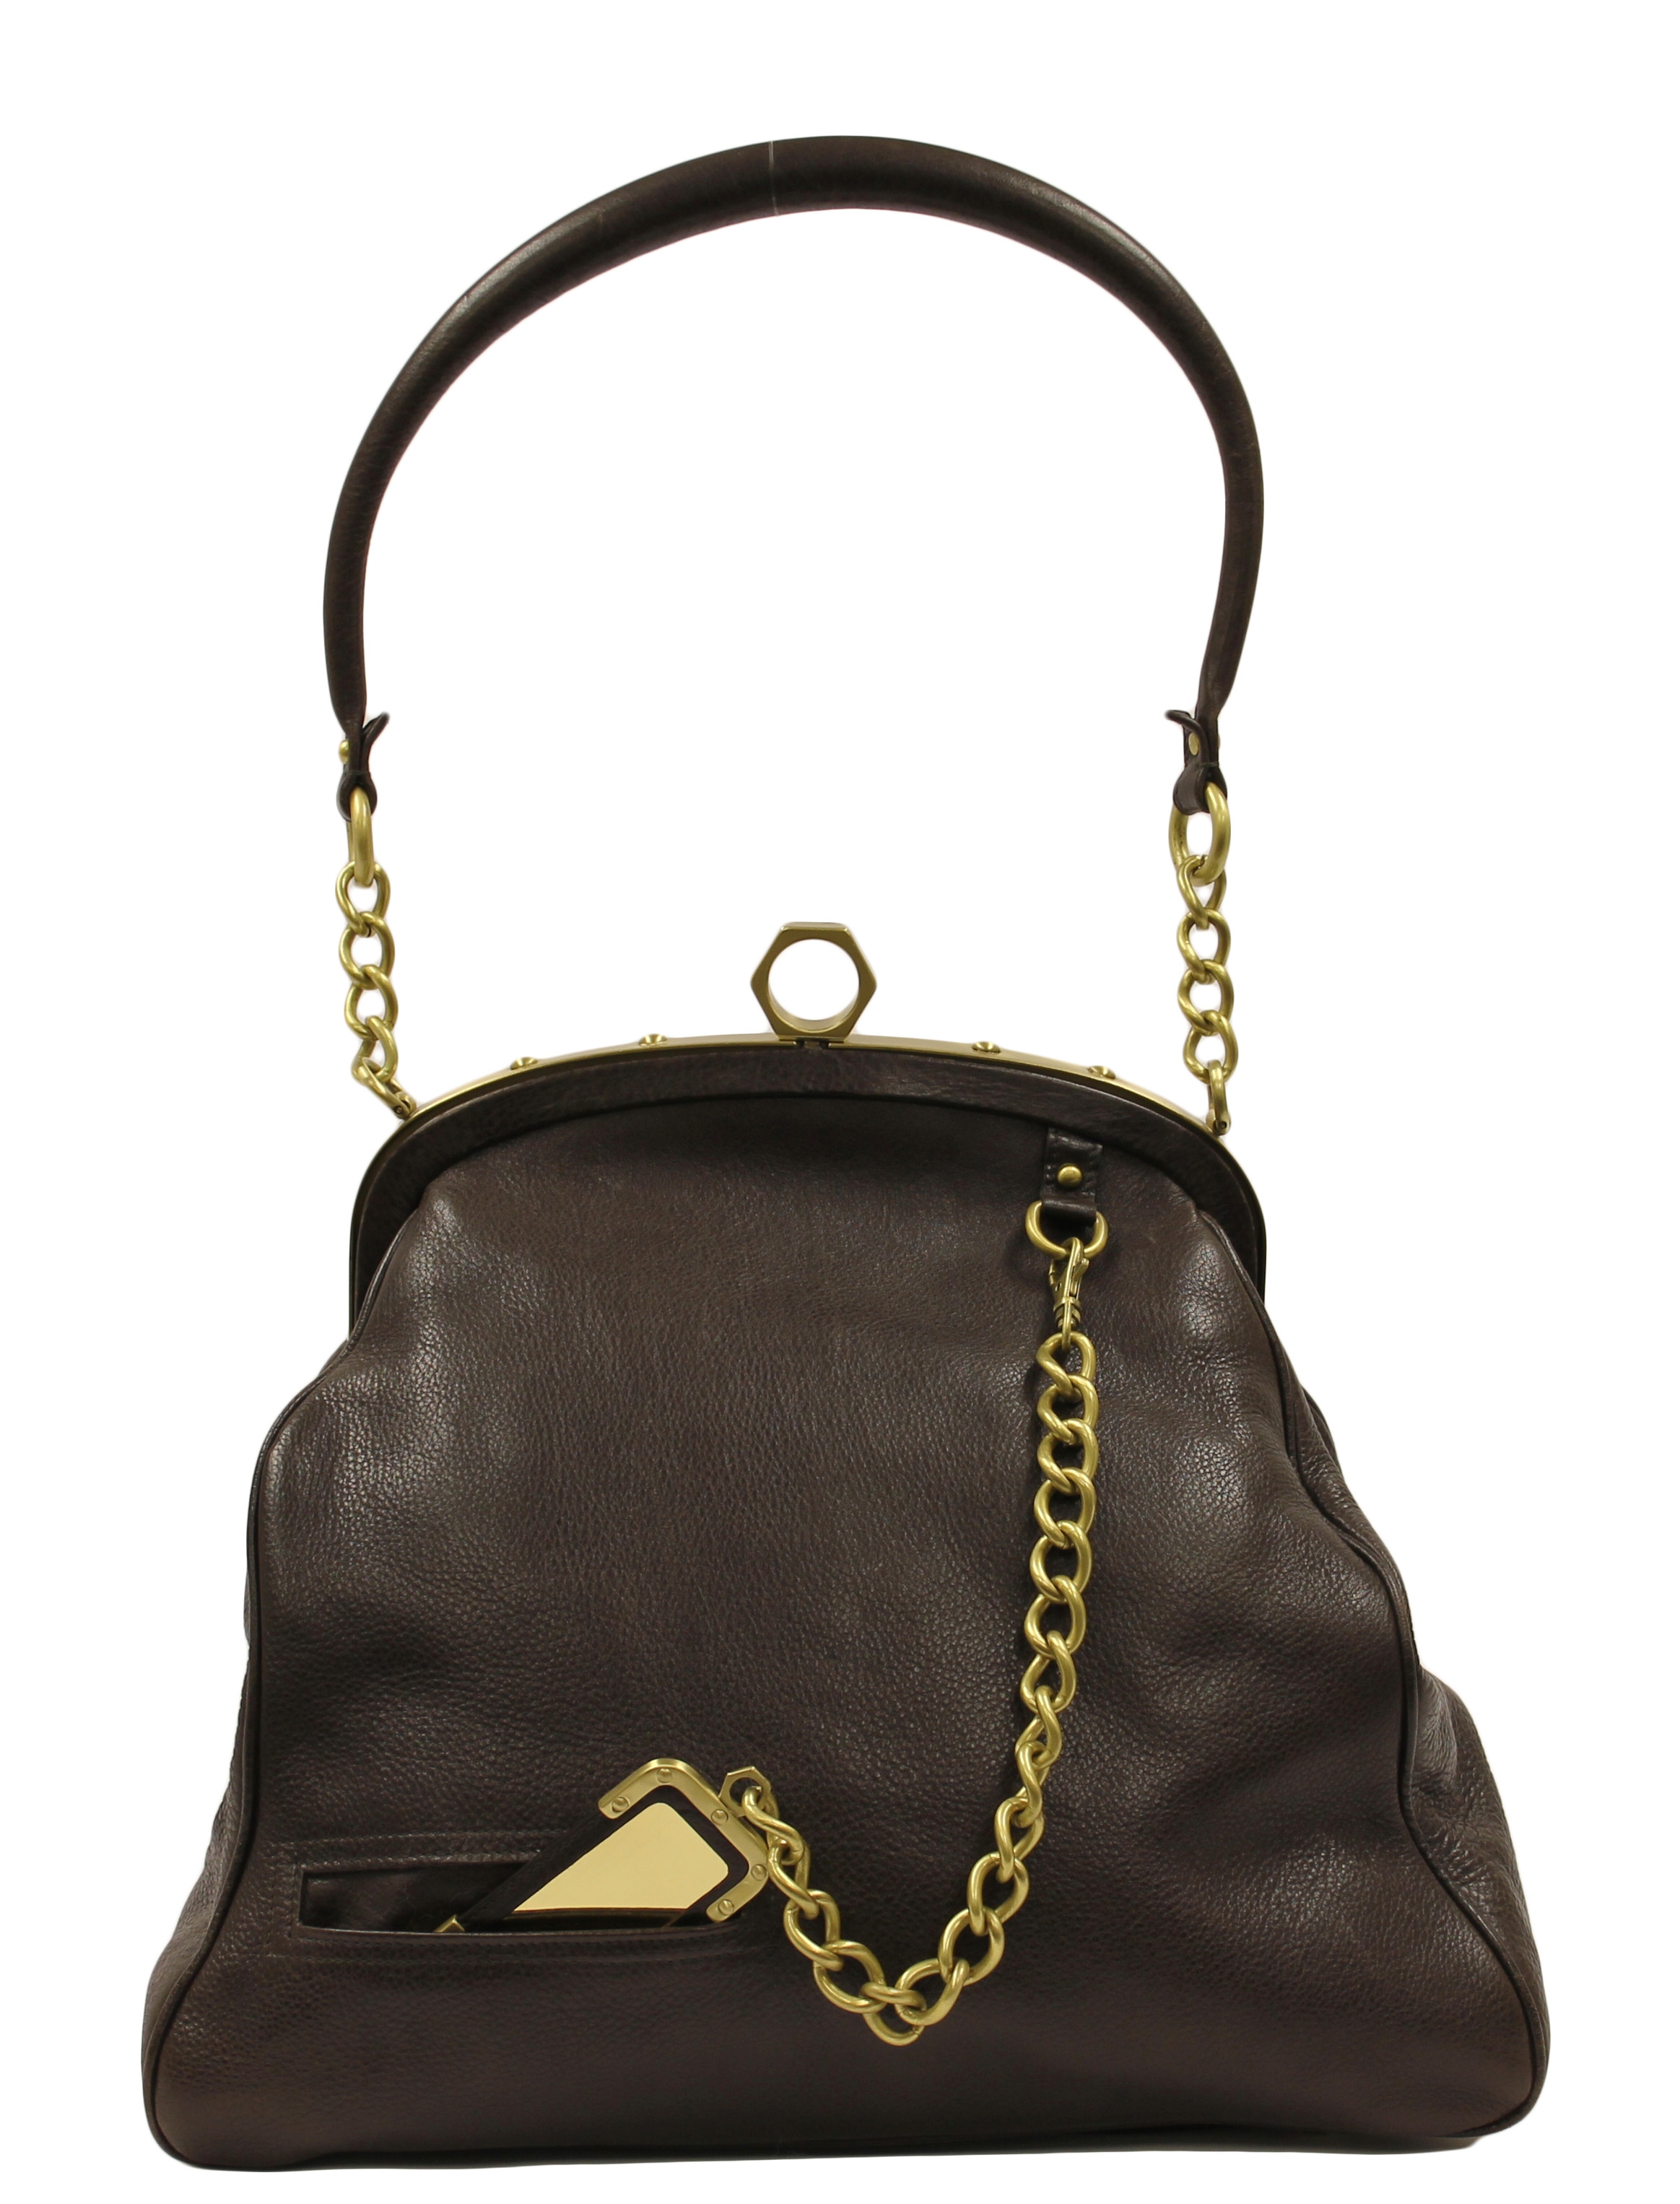 Zac Posen Authenticated Leather Handbag